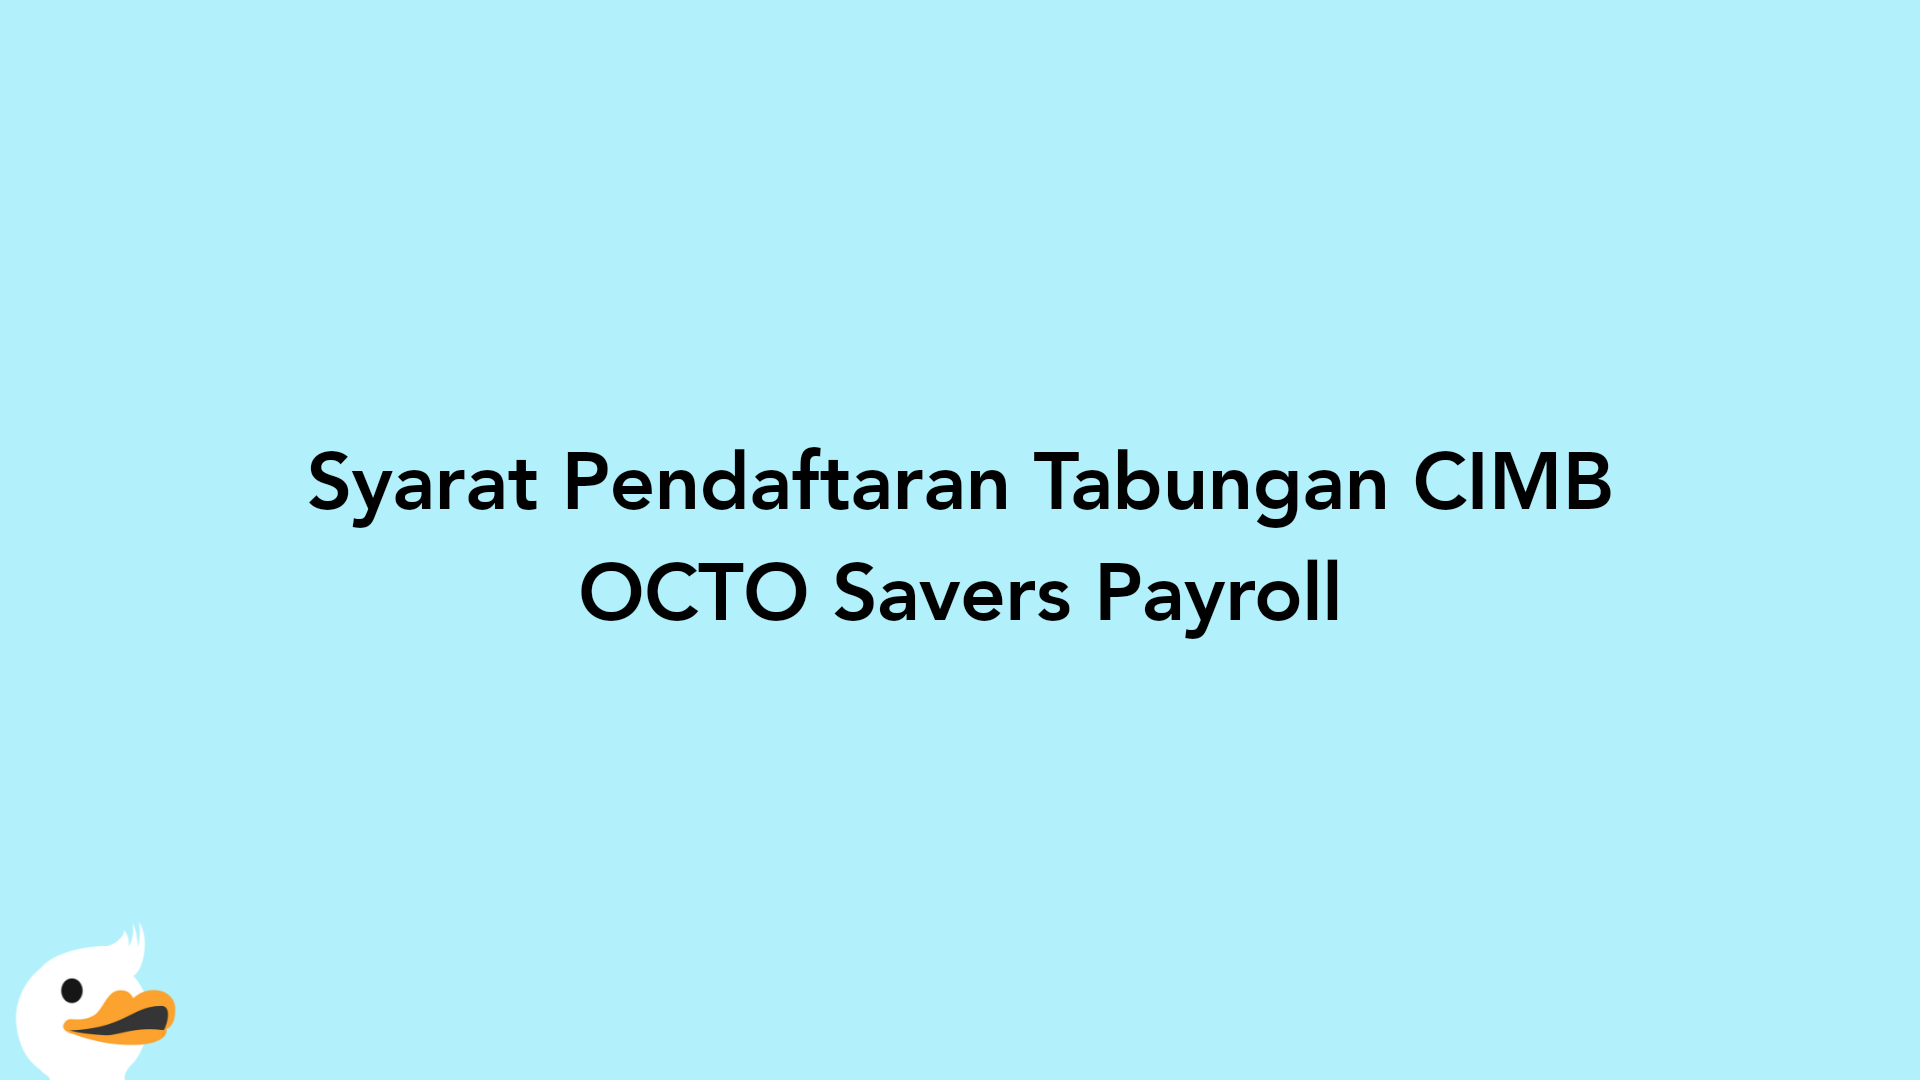 Syarat Pendaftaran Tabungan CIMB OCTO Savers Payroll